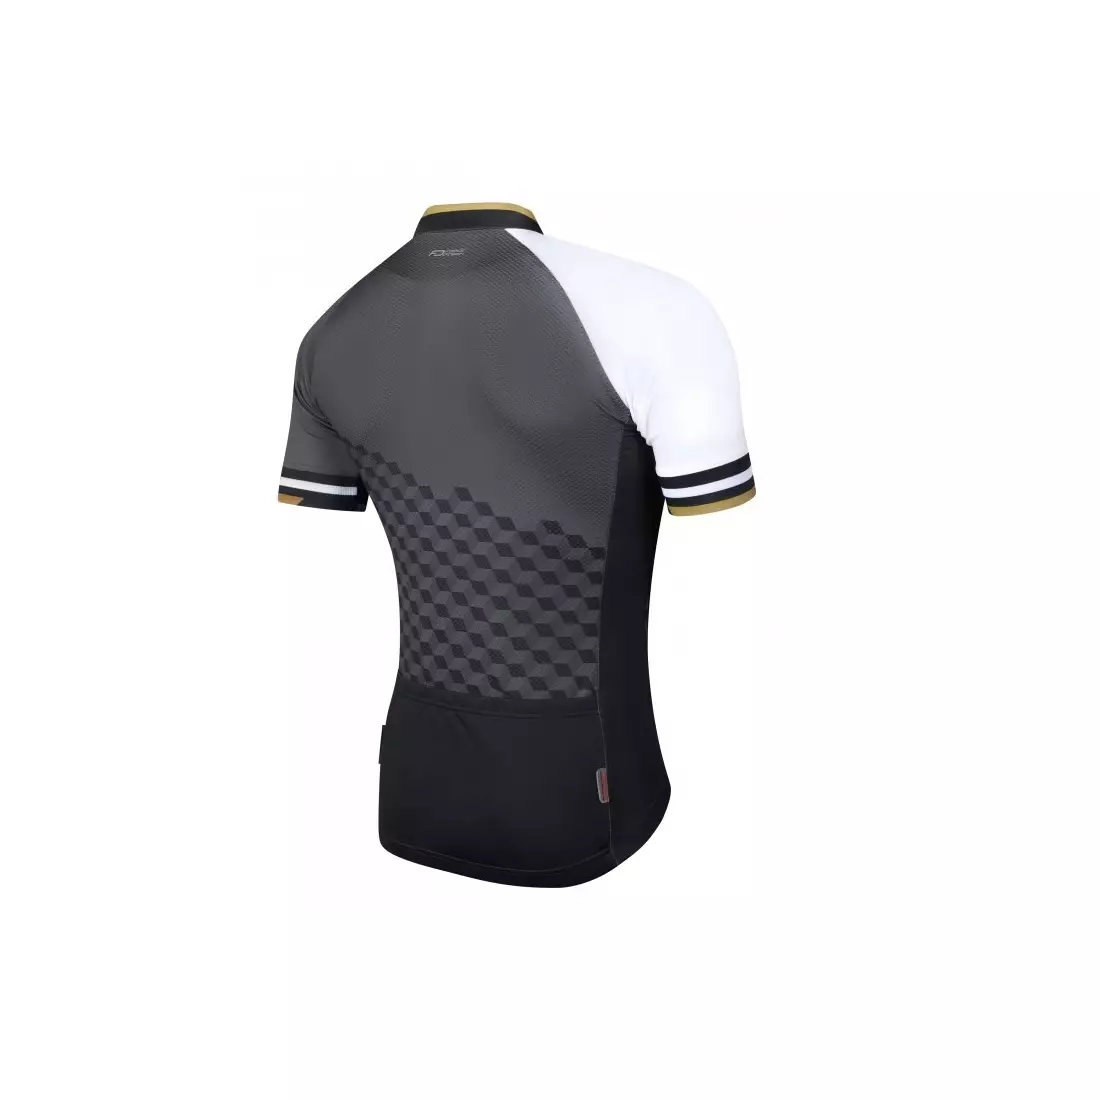 FORCE WAY tricou de ciclism pentru bărbați, alb și auriu 9001262